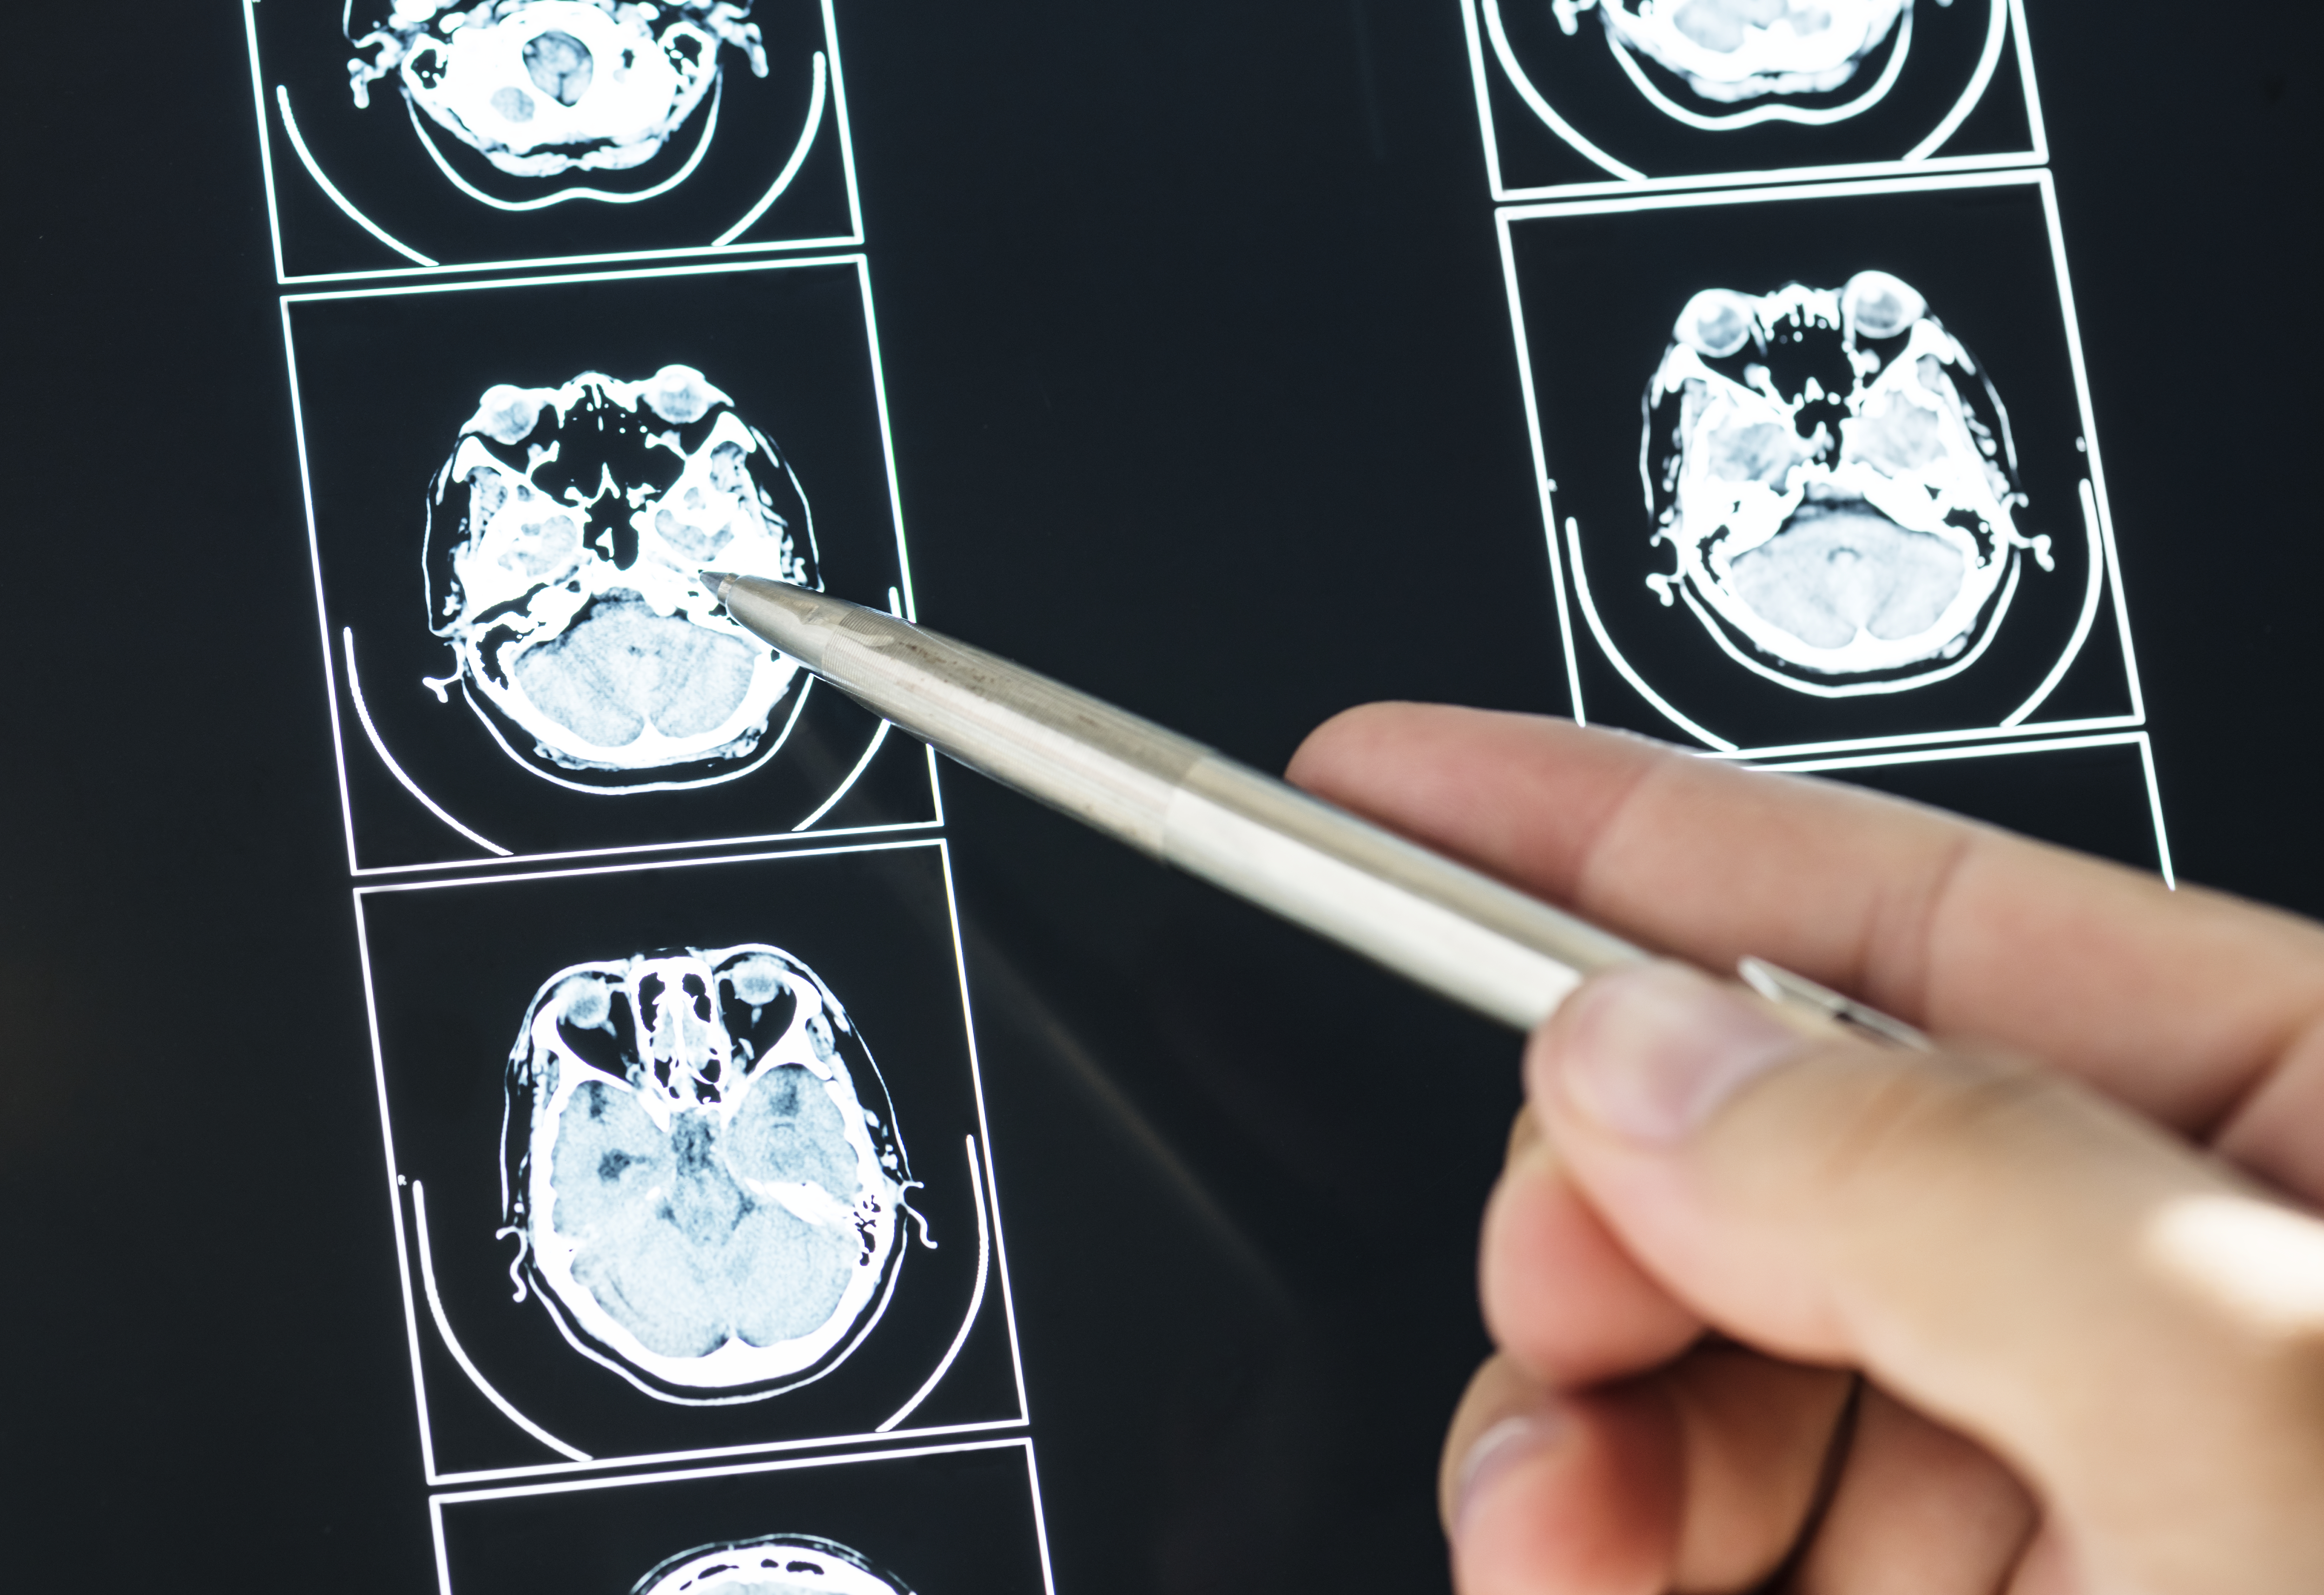 الدكتور منتصر سيد أحمد، يشارك في نشر دراسة جديدة بعنوان “مبررات إجراء أشعة مقطعية عاجلة على الدماغ في المستشفيات الحكومية الفلسطينية “